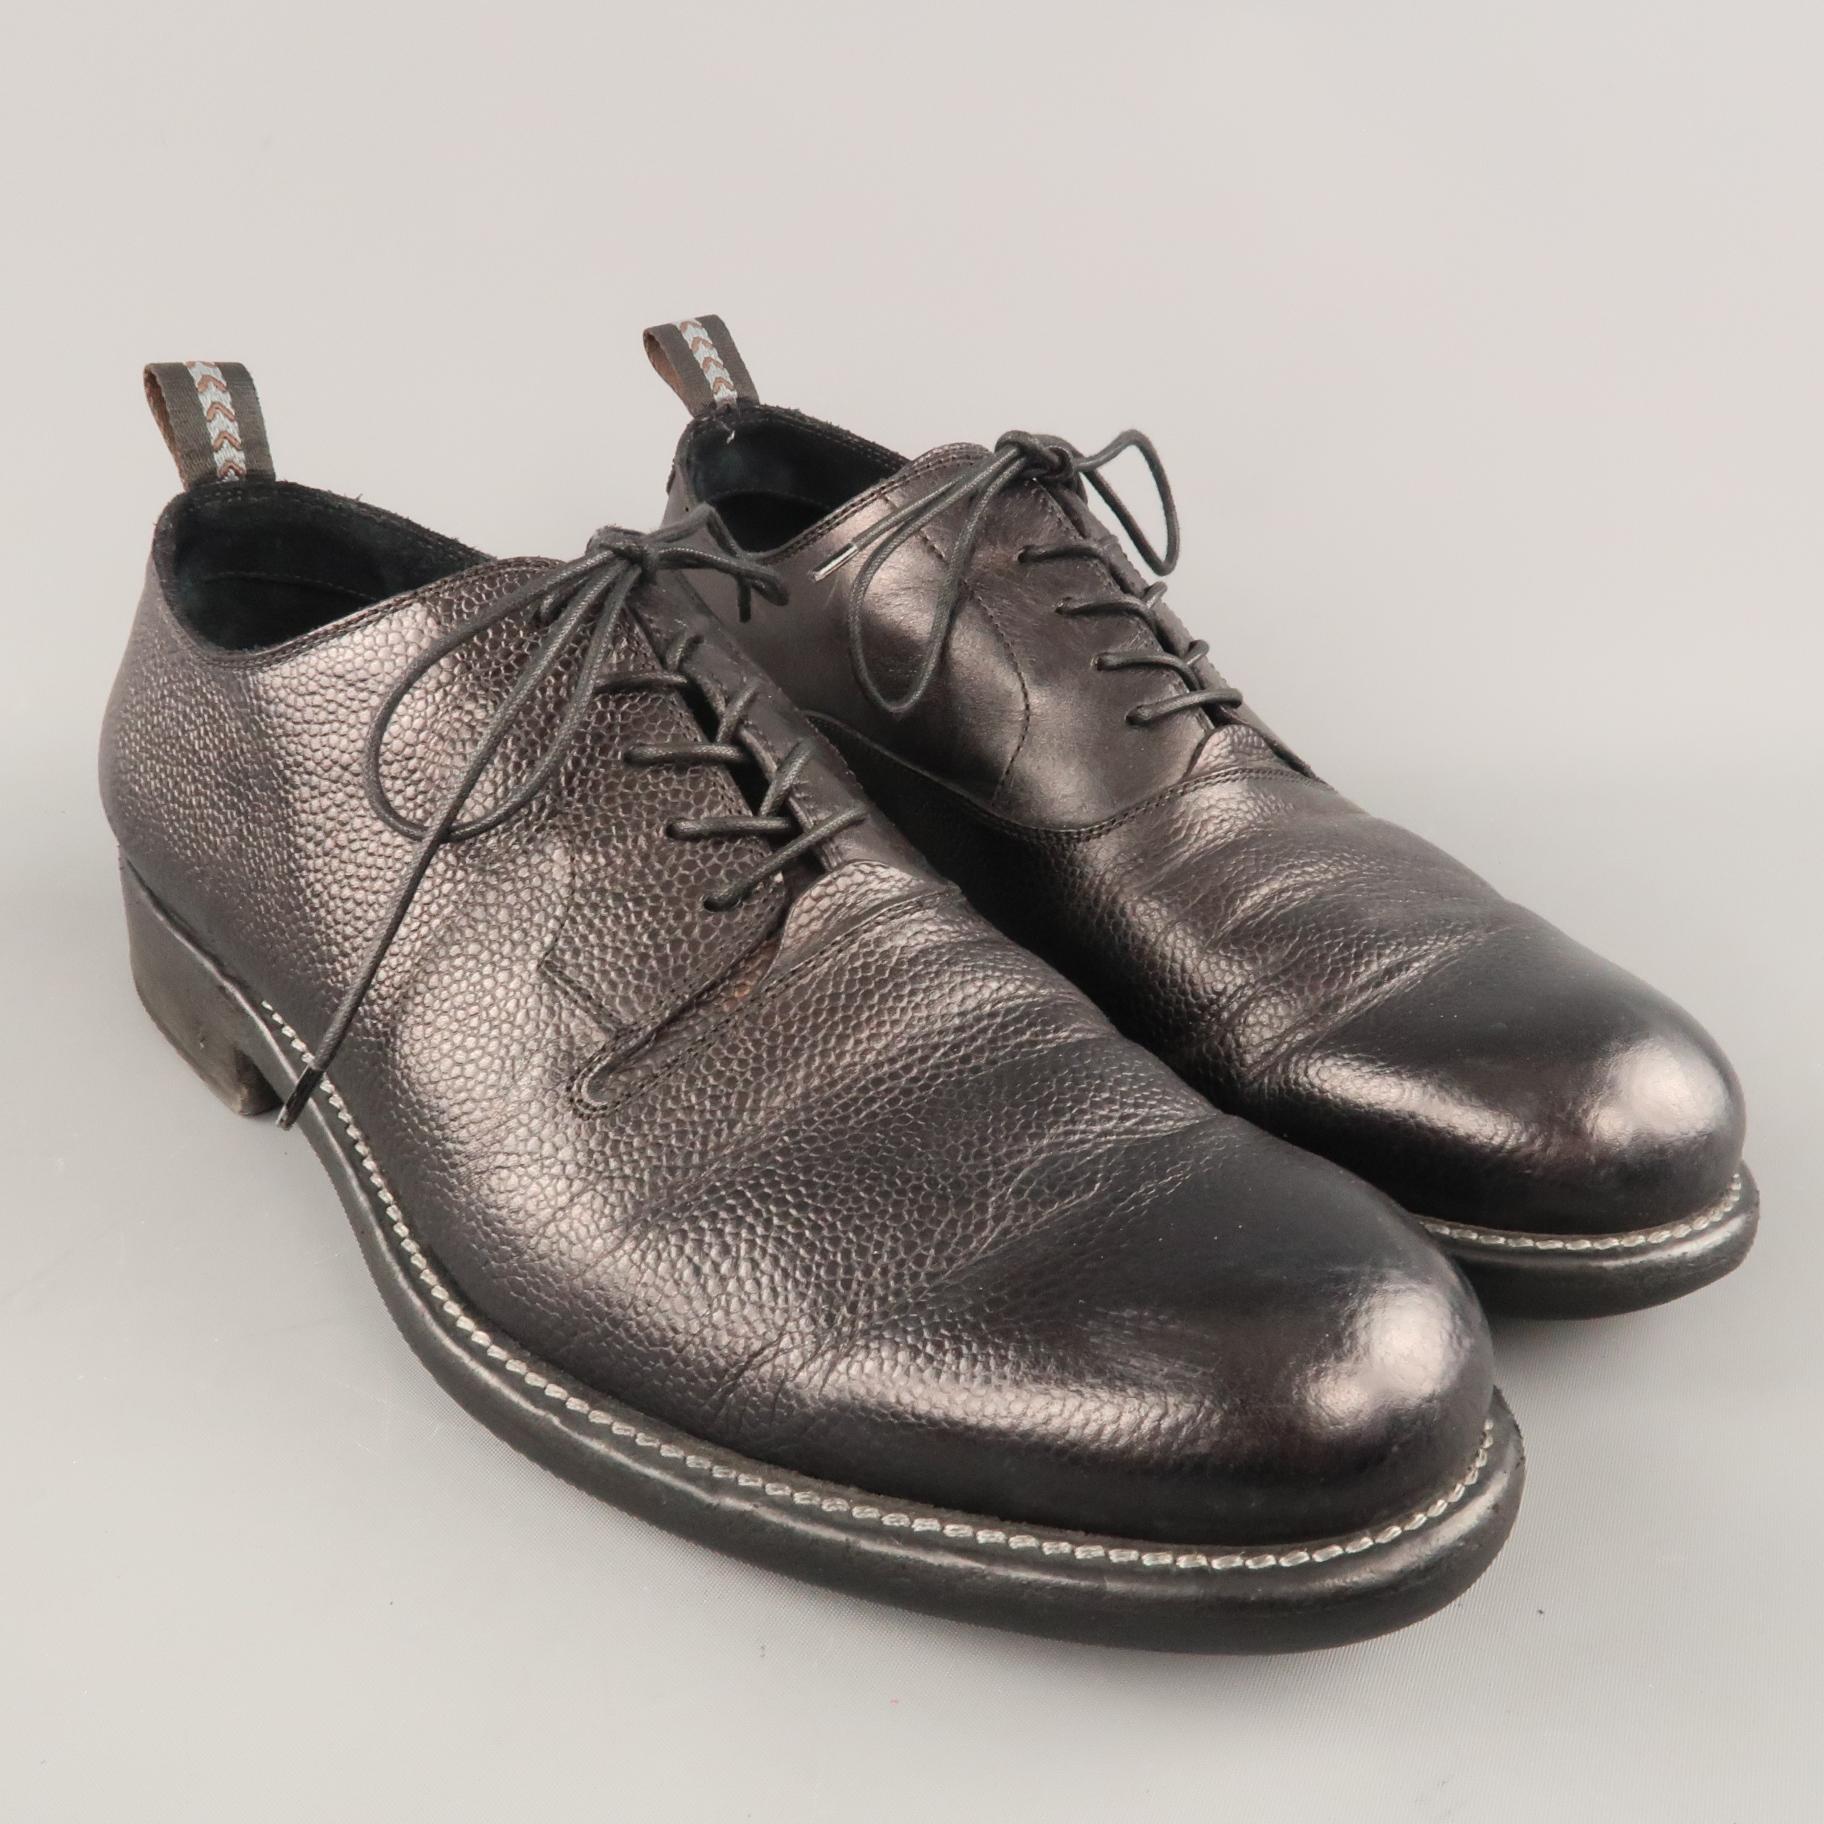 JOHN VARVATOS Derby-Schnürschuhe aus genarbtem Leder mit glatter Oberfläche und abgesenkter Sohle. Handgefertigt in Italien.
 
Ausgezeichneter gebrauchter Zustand.
Gezeichnet:10
 
Laufsohle: 12 x 4.5 in.